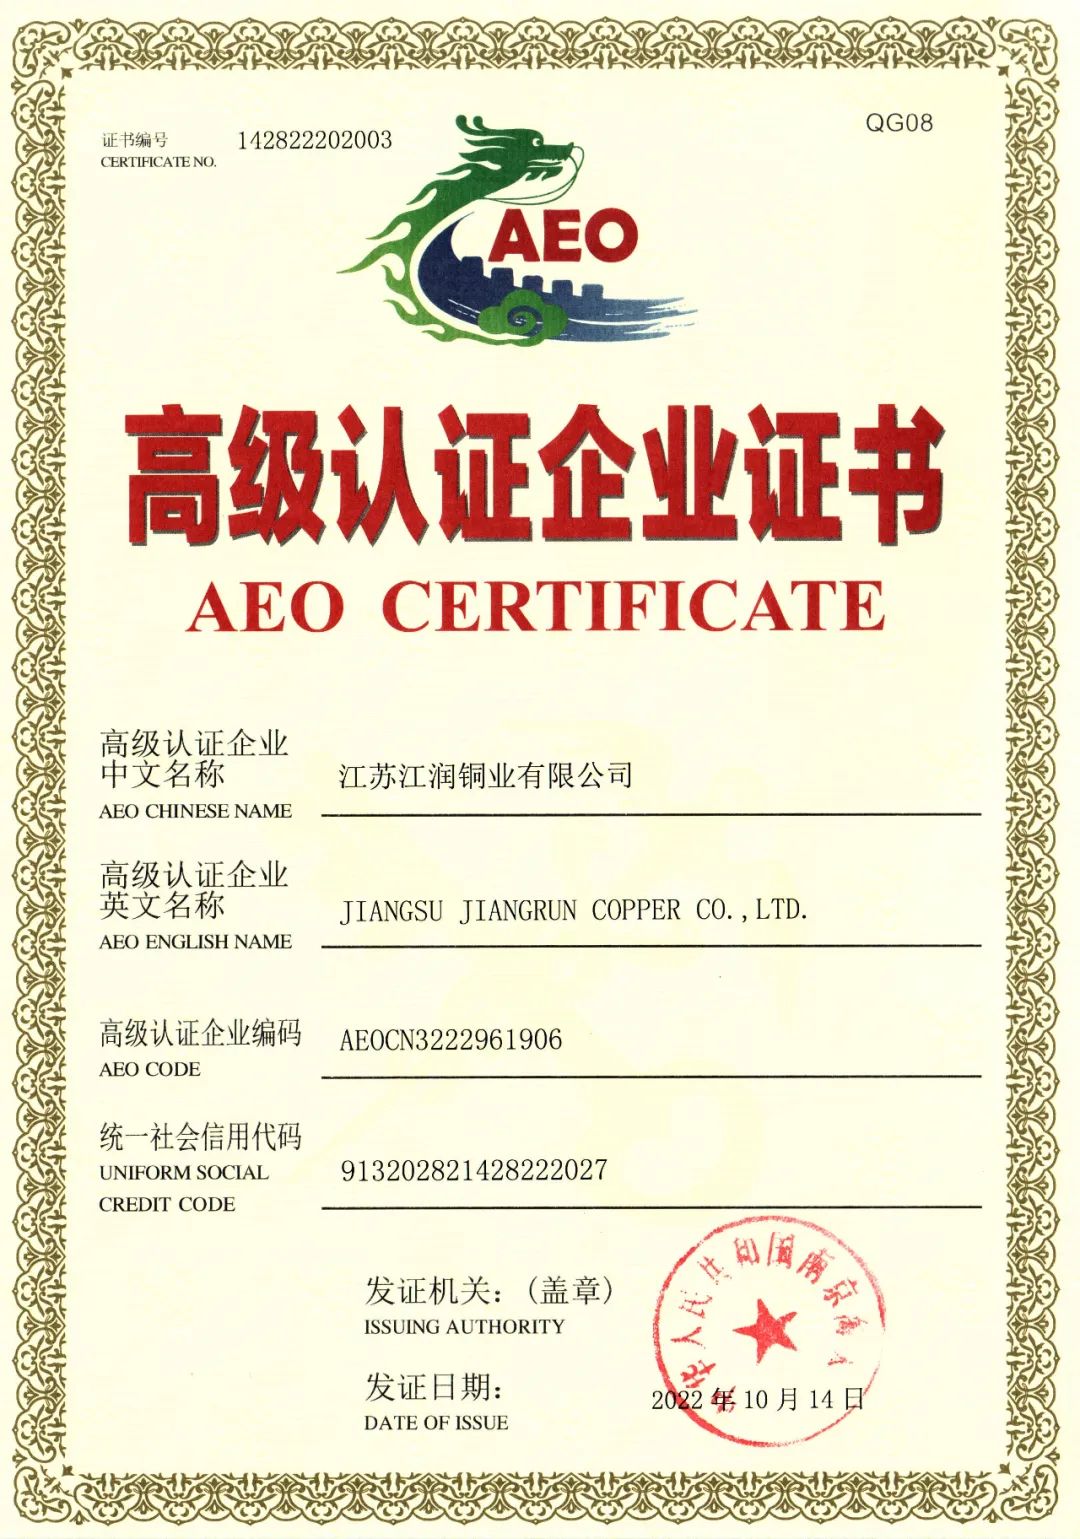 江潤銅業獲評“AEO高級認證企業”